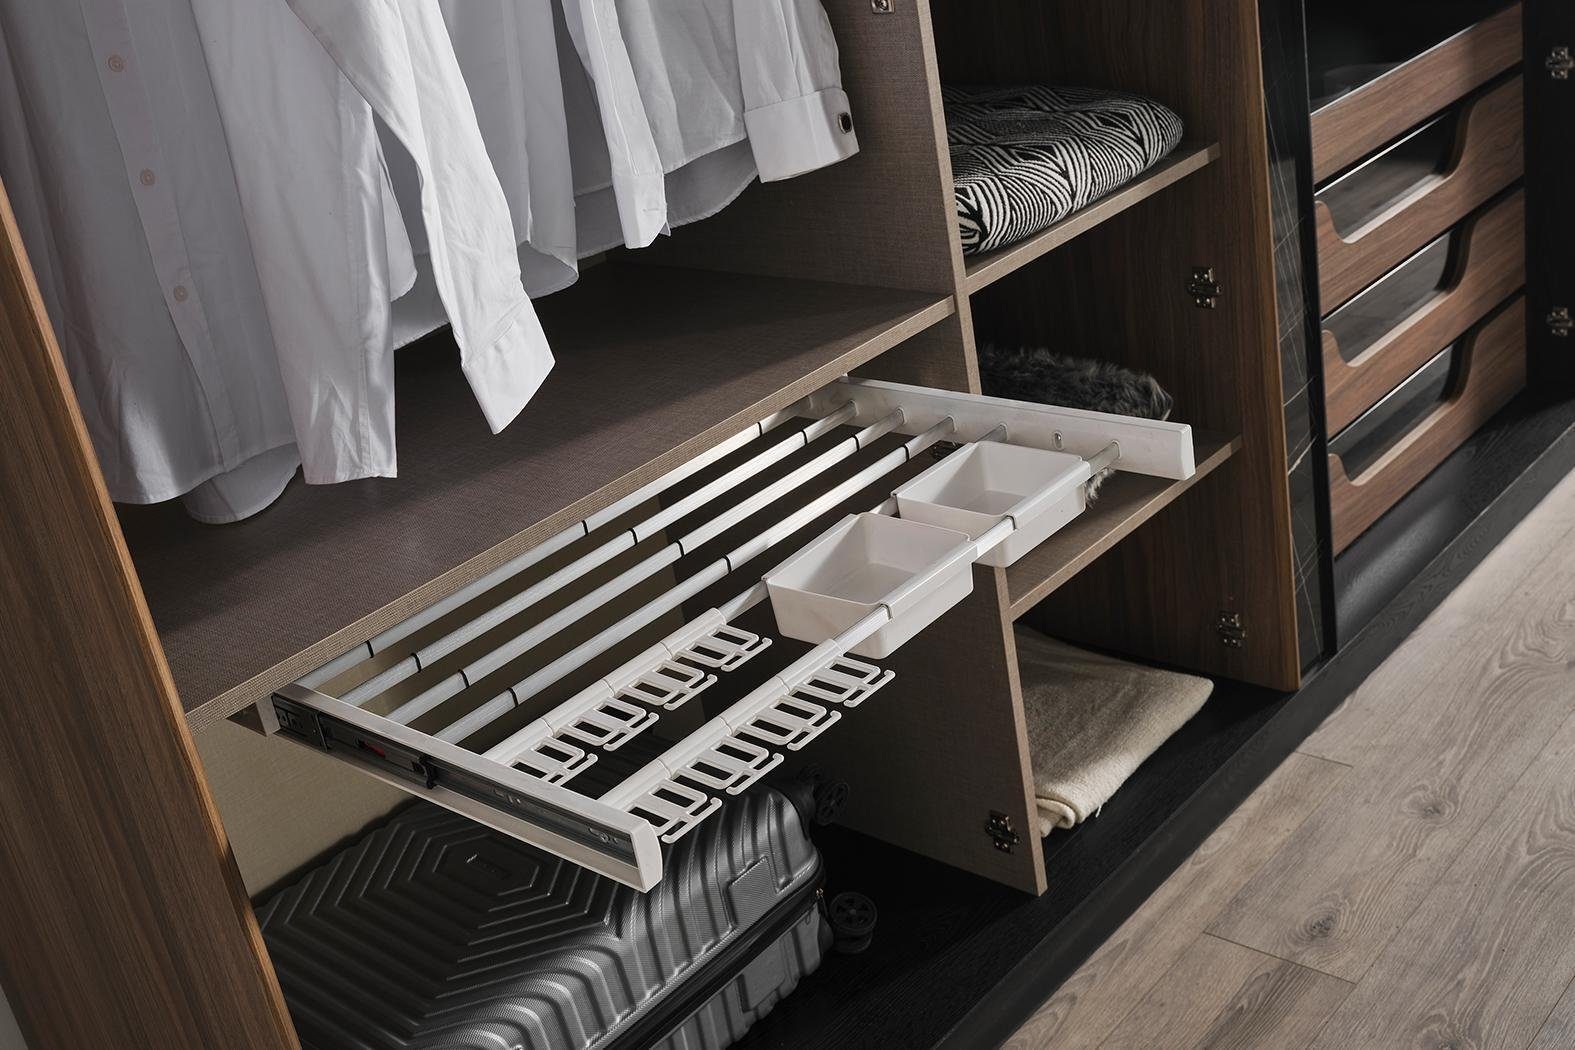 2xNachttische Set In JVmoebel 4tlg Schlafzimmer Luxus, Made Design Schlafzimmer-Set Kleiderschrank Bett Europe